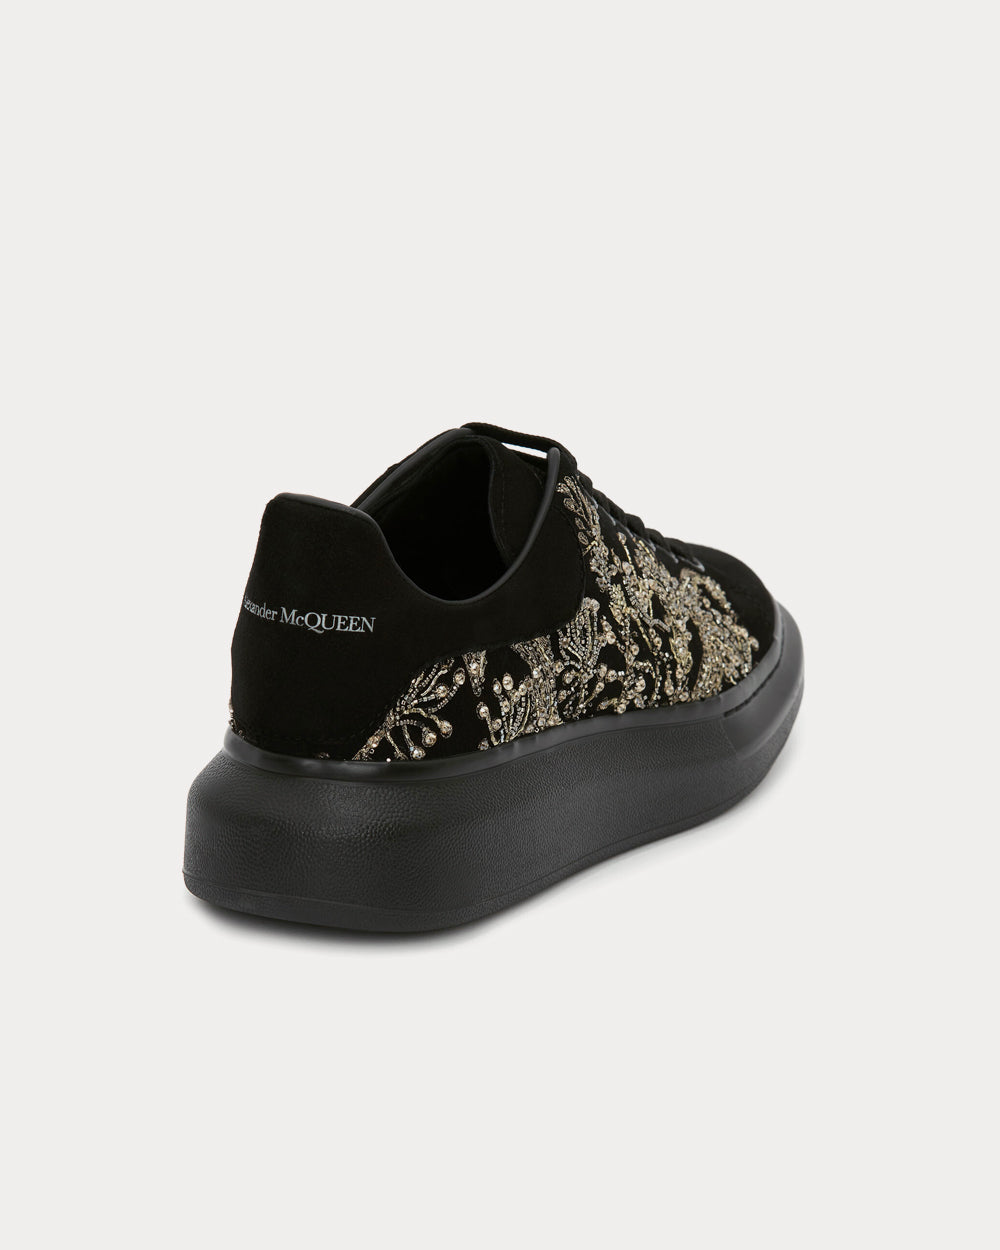 Alexander McQueen - Oversized Black / Silver Low Top Sneakers